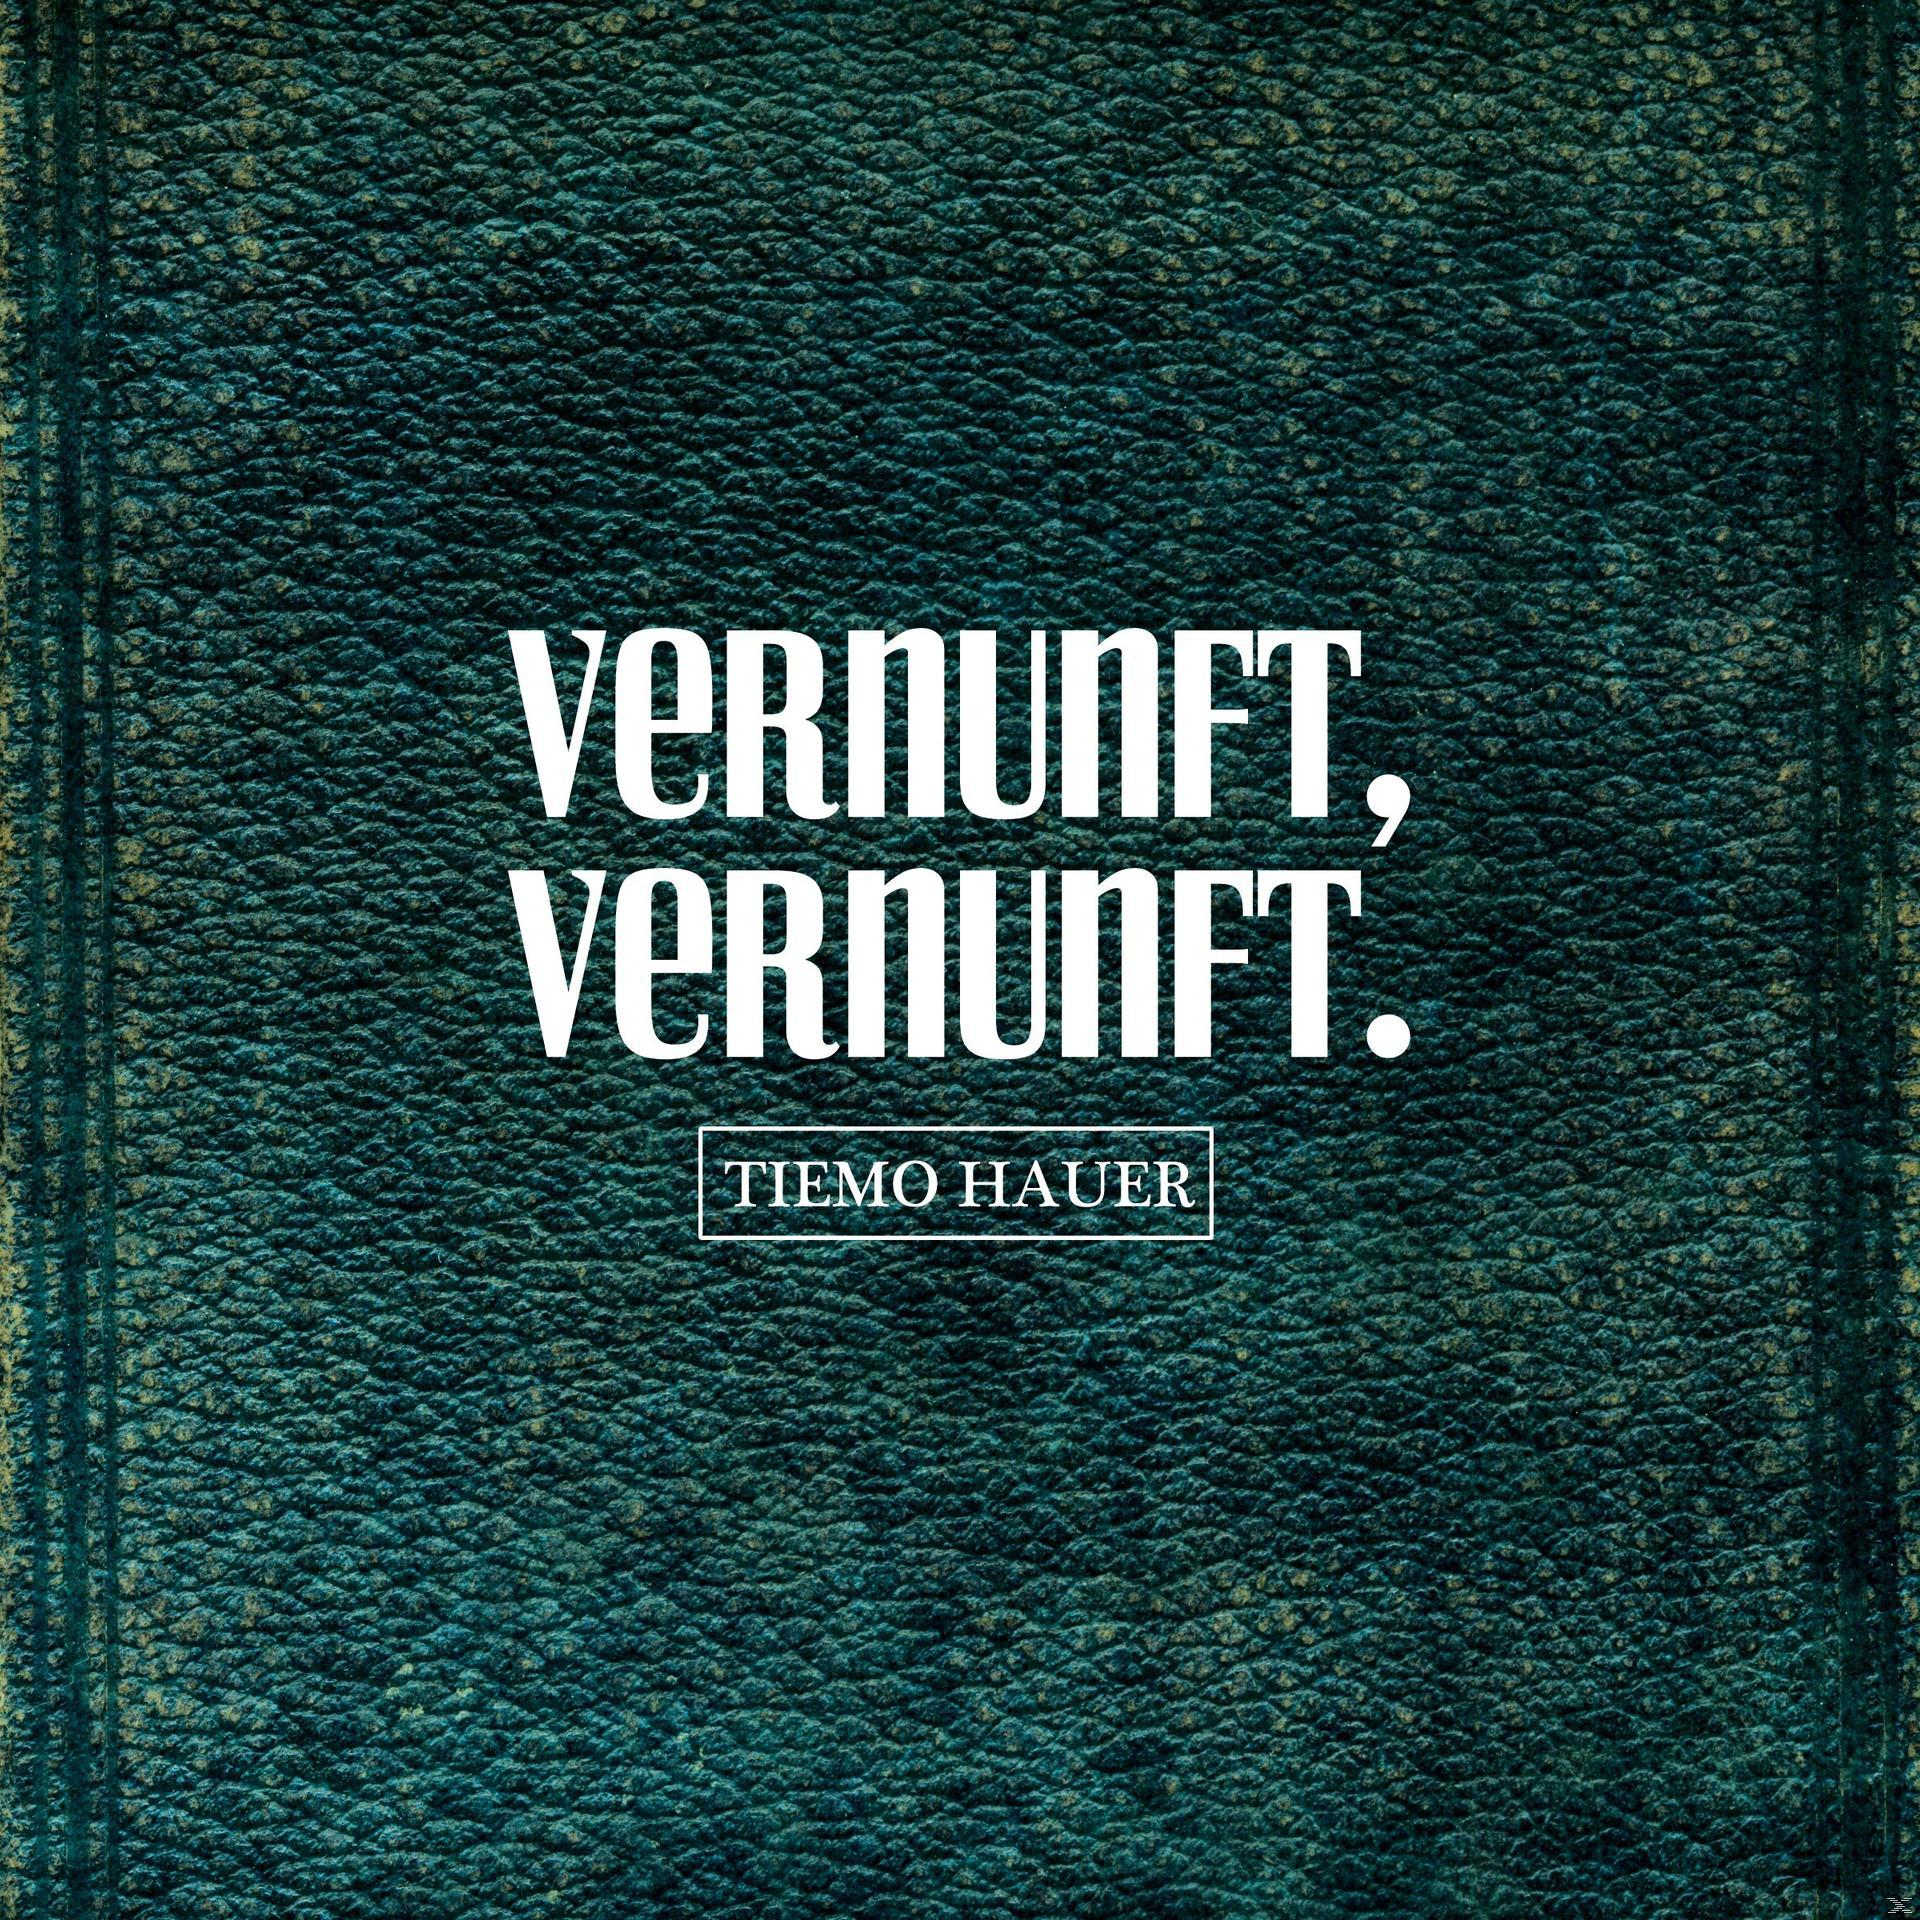 (Vinyl) - - VERNUNFT. VERNUNFT, Tiemo Hauer